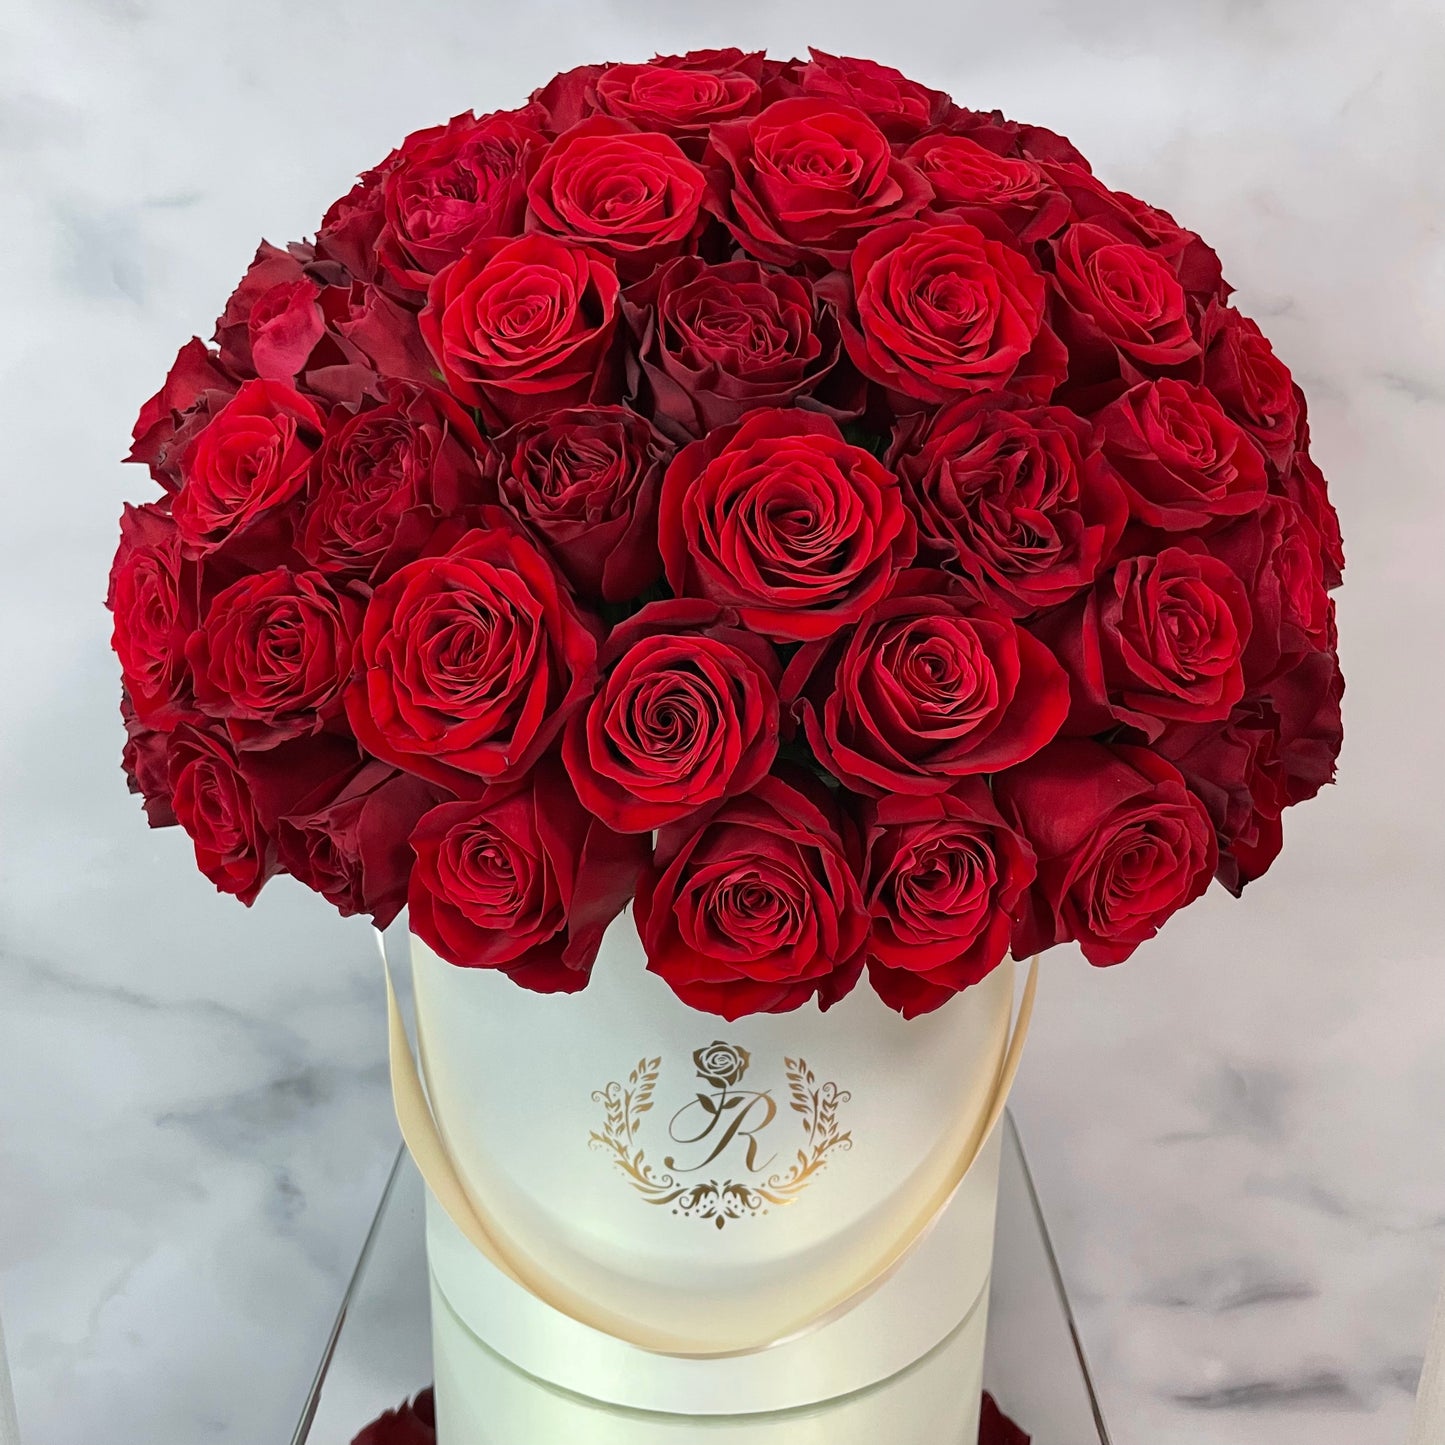 【WHITE BOX】プロポーズ用 赤バラ108本のドームフラワー